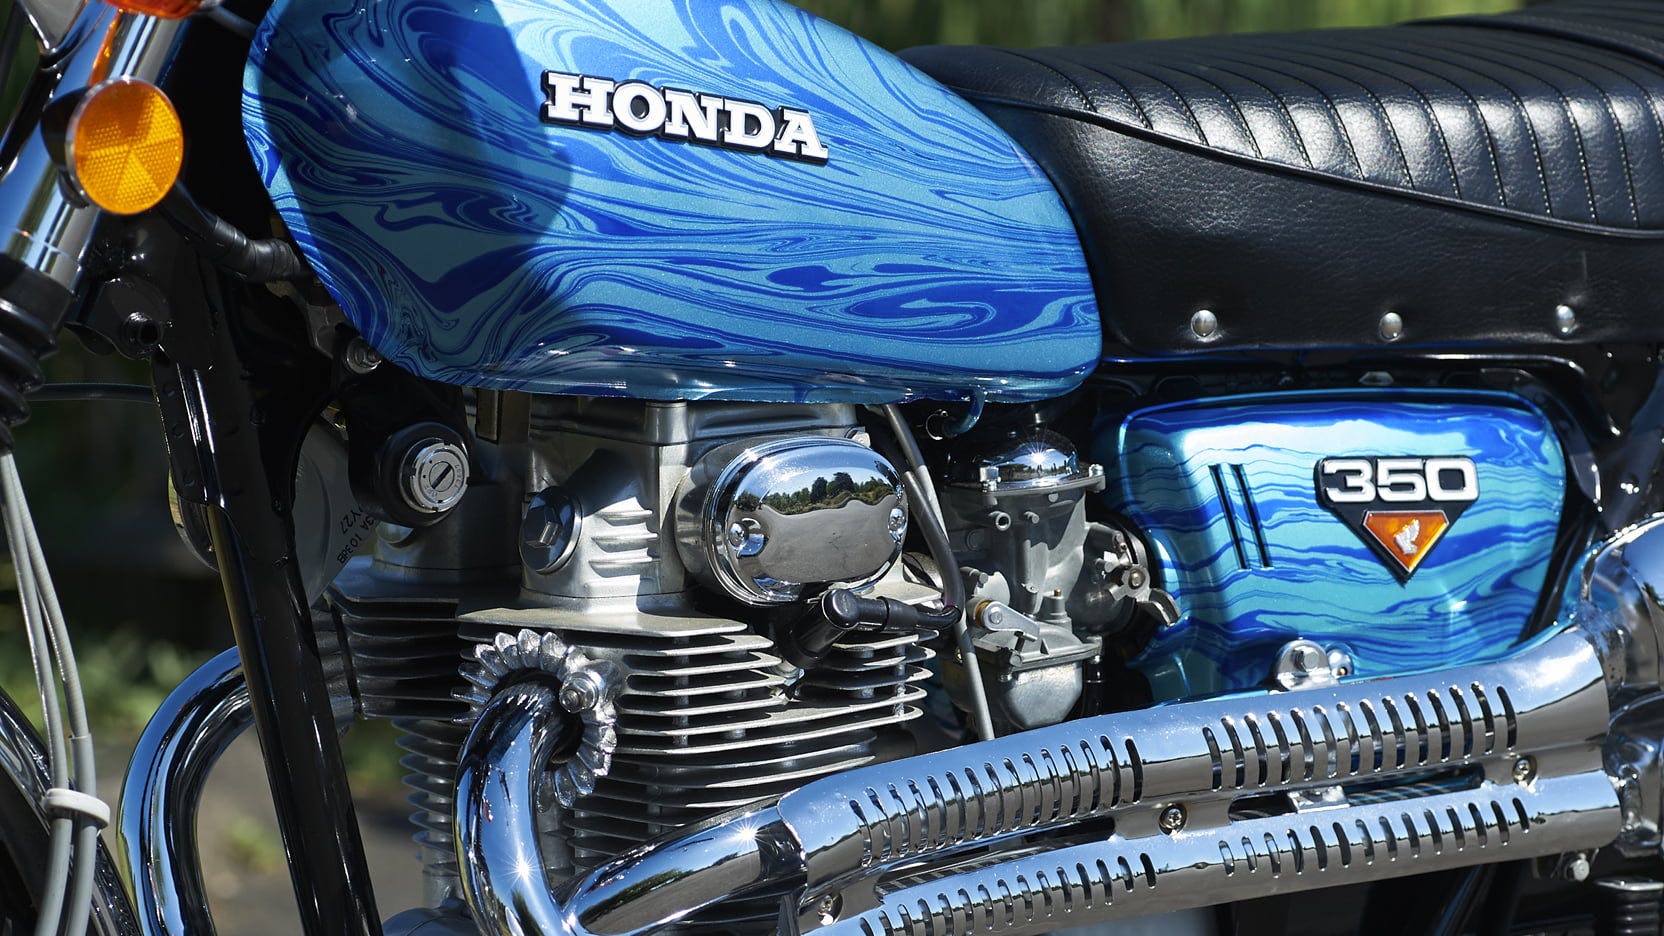 Honda Blue Dragon pattern detail